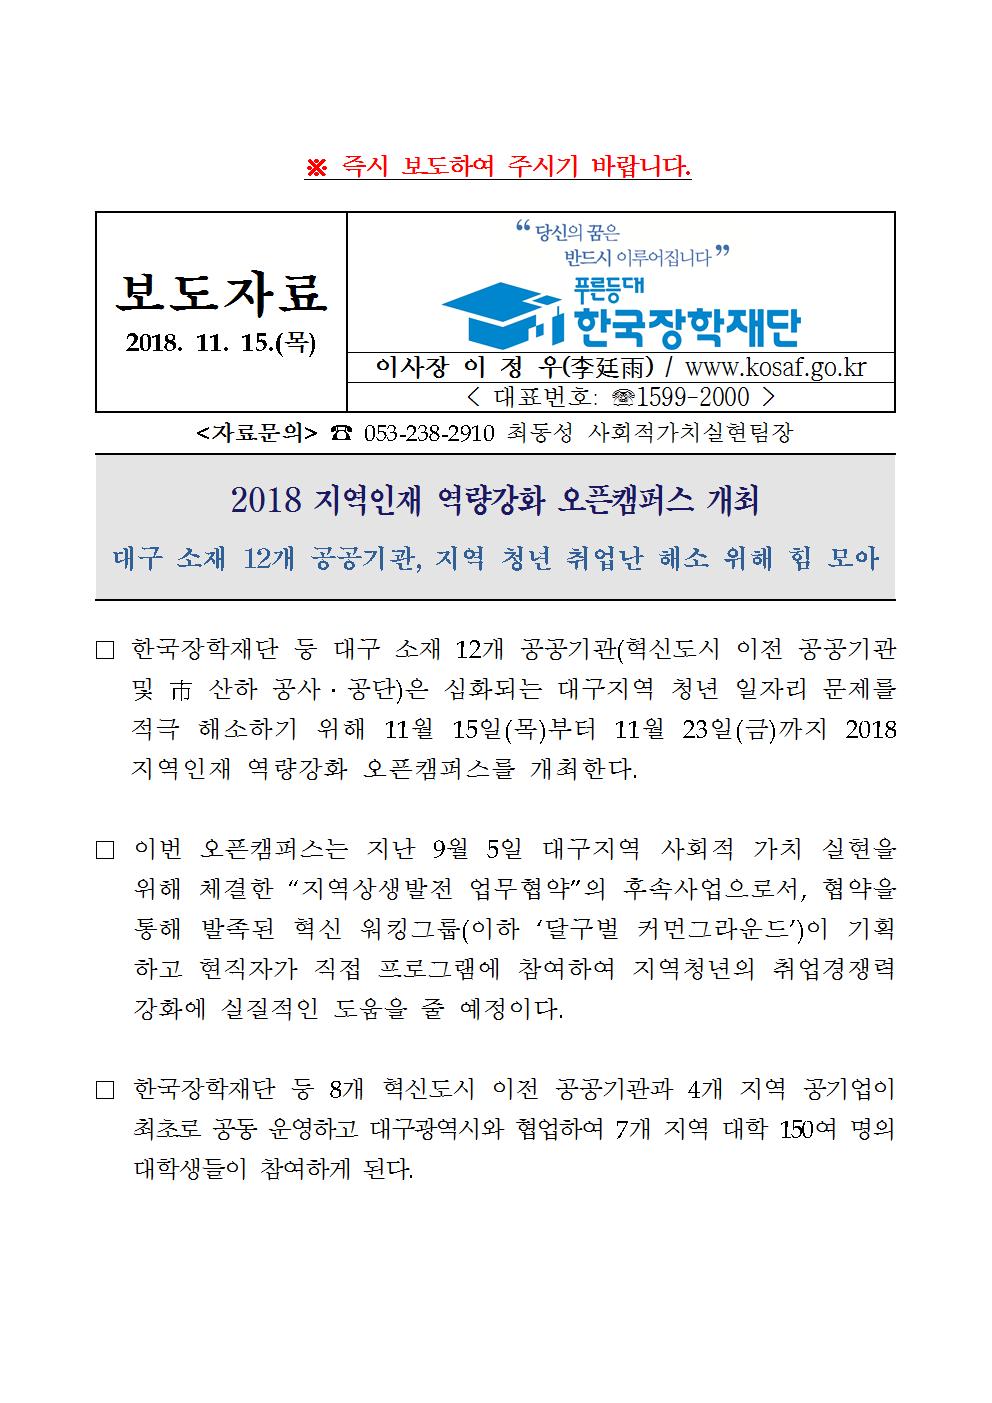 11-15(목)[보도자료] 한국장학재단, 2018 지역인재 역량강화 오픈캠퍼스 개최001.jpg